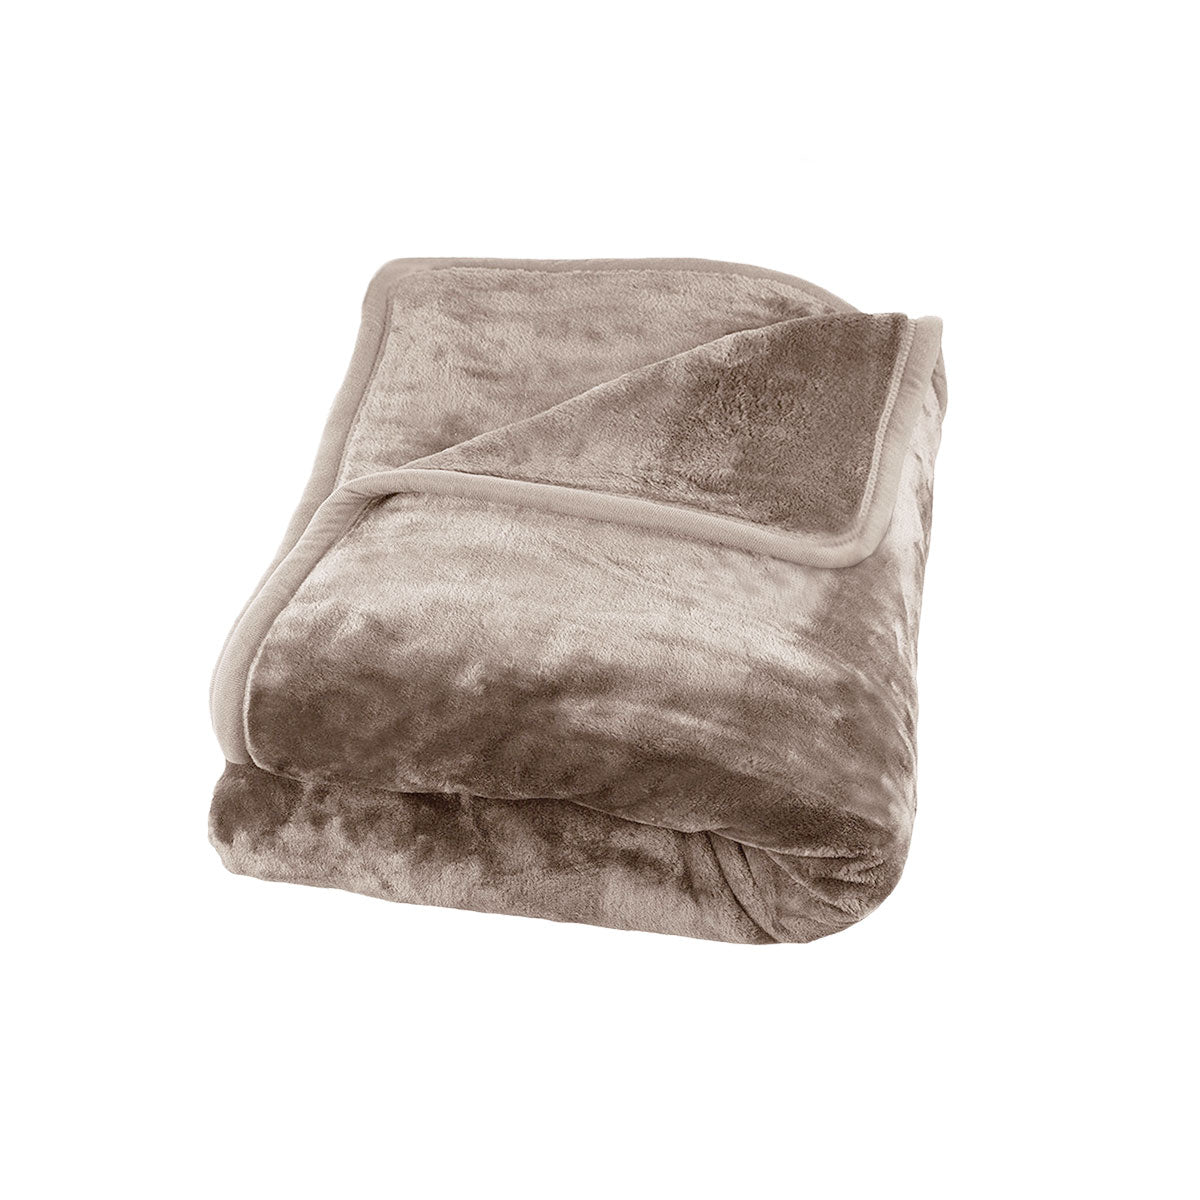 J Elliot Home 800GSM Luxury Winter Thick Mink Blanket Beige Queen